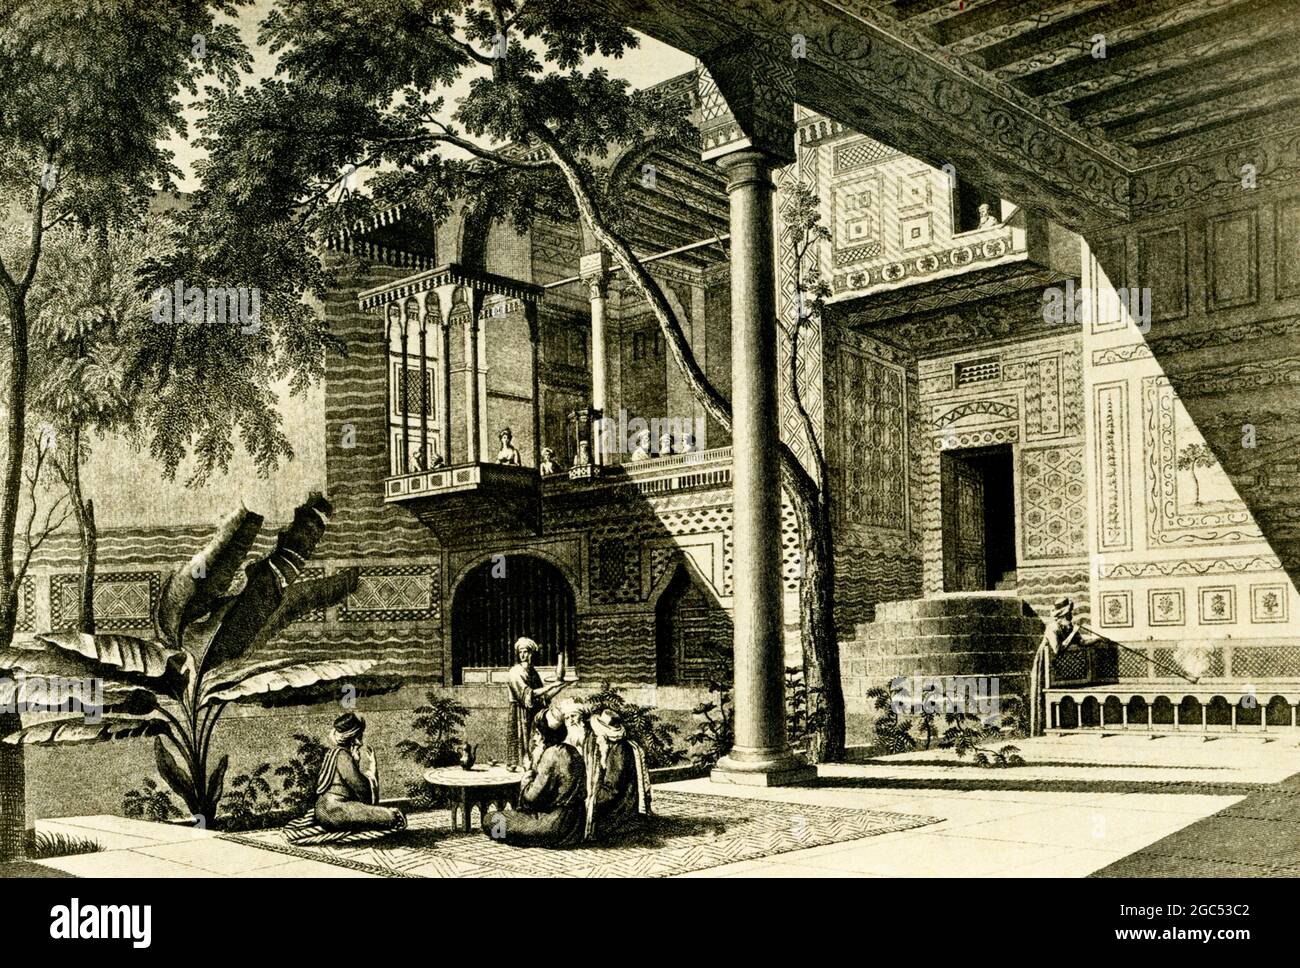 La légende accompagnant cette illustration de 1903 dans le livre de Gaston Maspero sur l’histoire de l’Égypte est la suivante : « Courtyard of House of Quasim Bey ». Le terme « bey » désigne le gouverneur d'un district ou d'une province de l'Empire ottoman. Banque D'Images